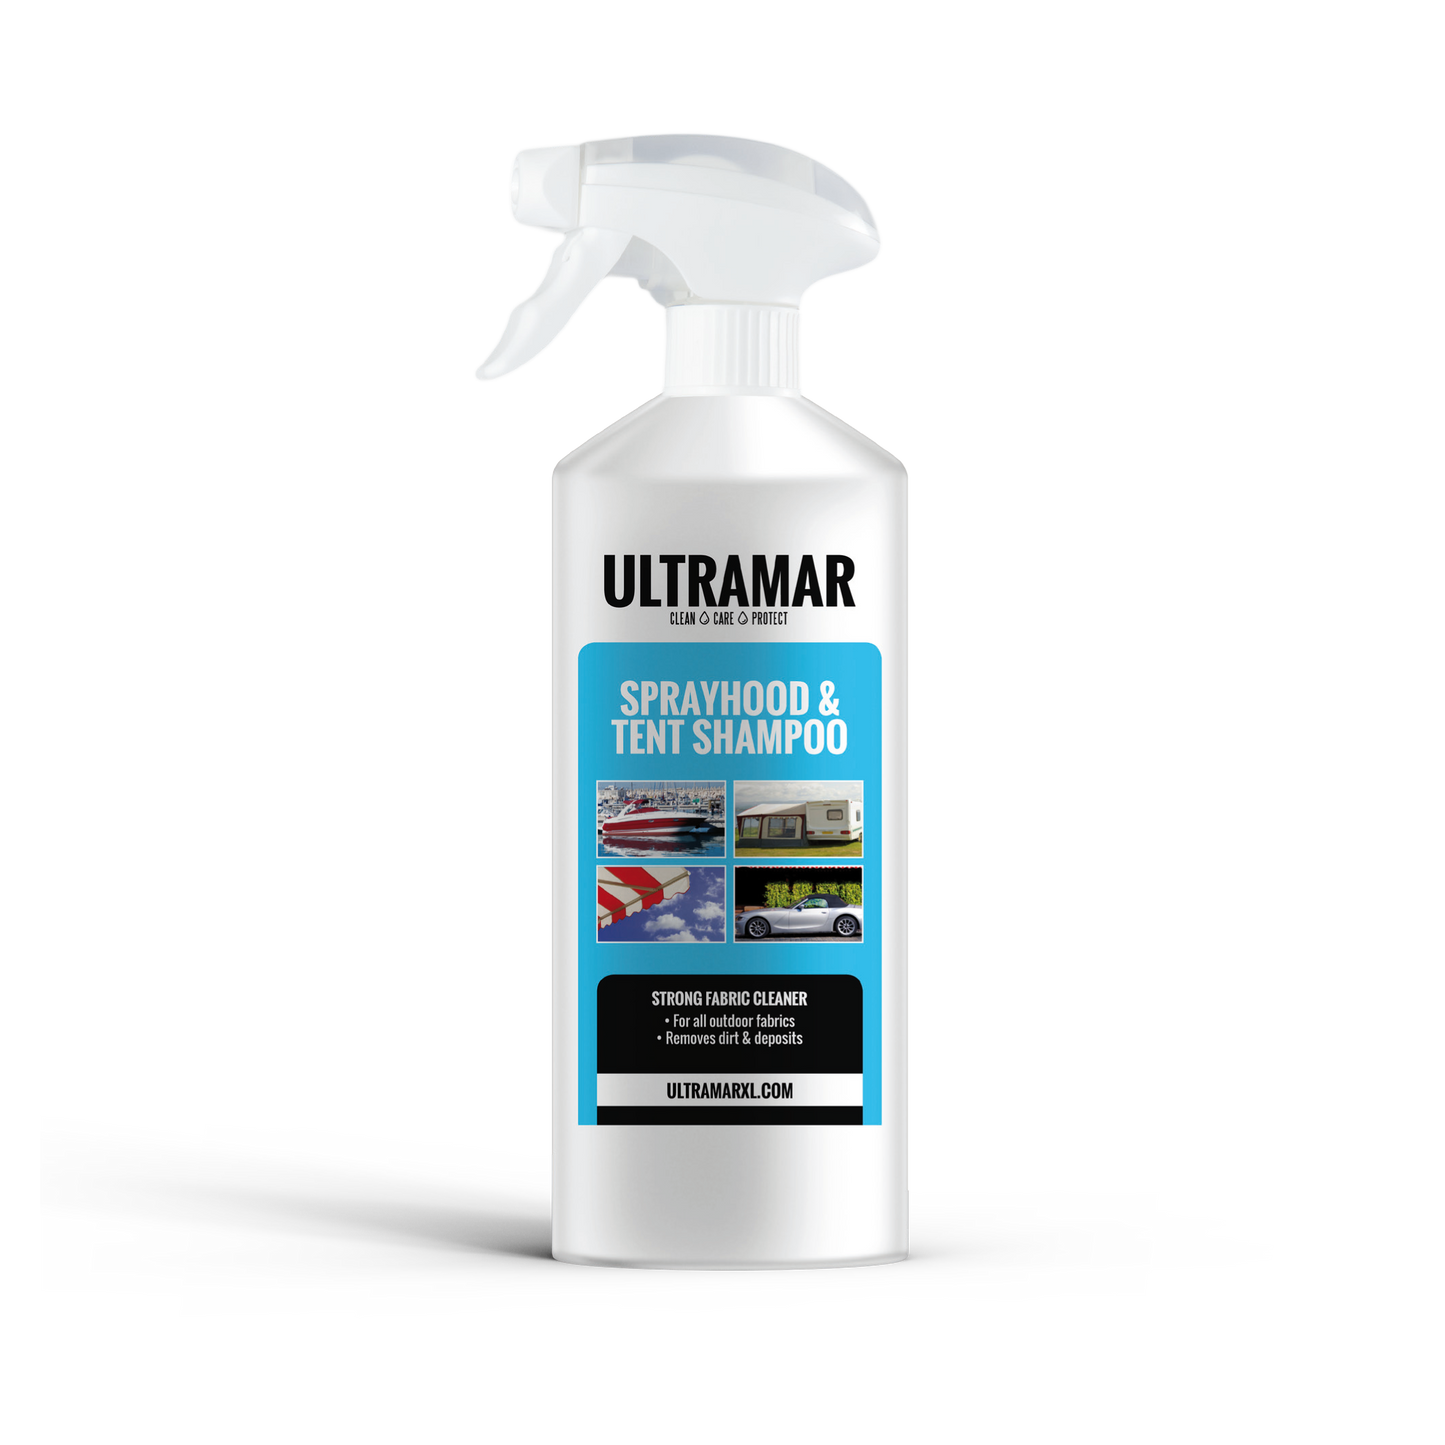 Nettoyant pour votre capote de bateau - Sprayhood & Tent Shampoo